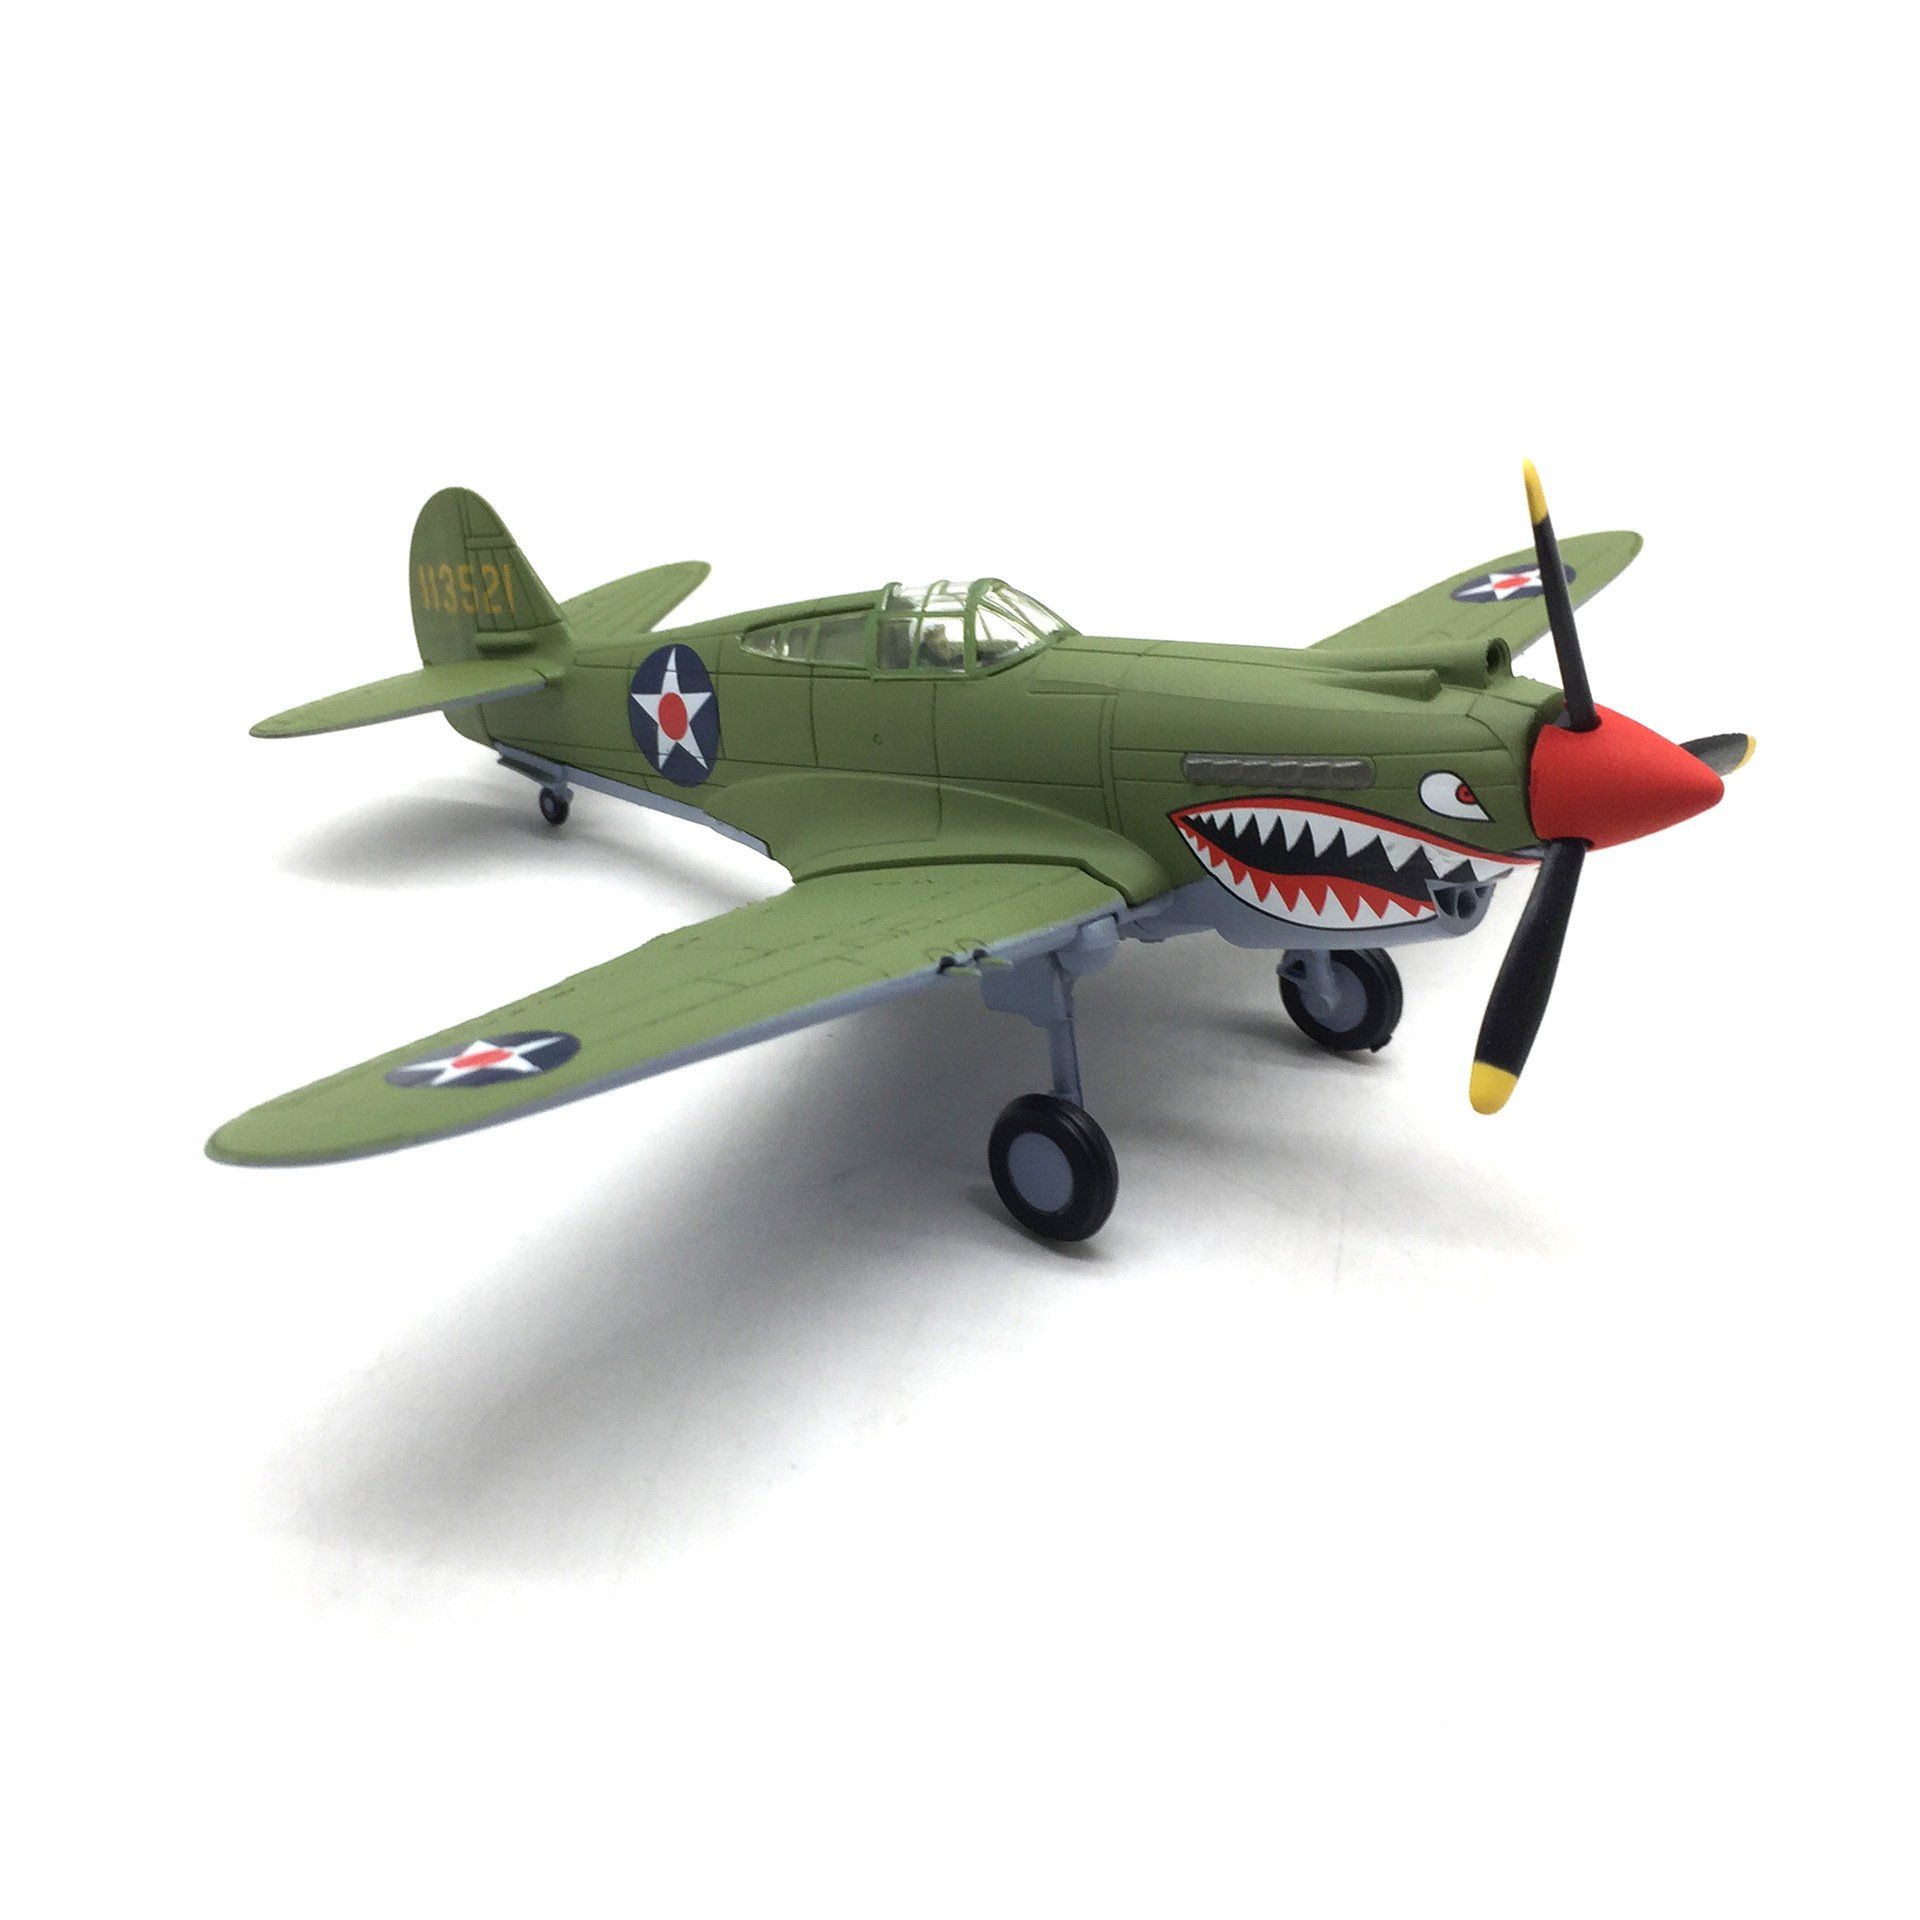  Mô hình máy bay chiến đấu cánh quạt P-40 Fighter tỉ lệ 1:72 Ns models MBQS024 